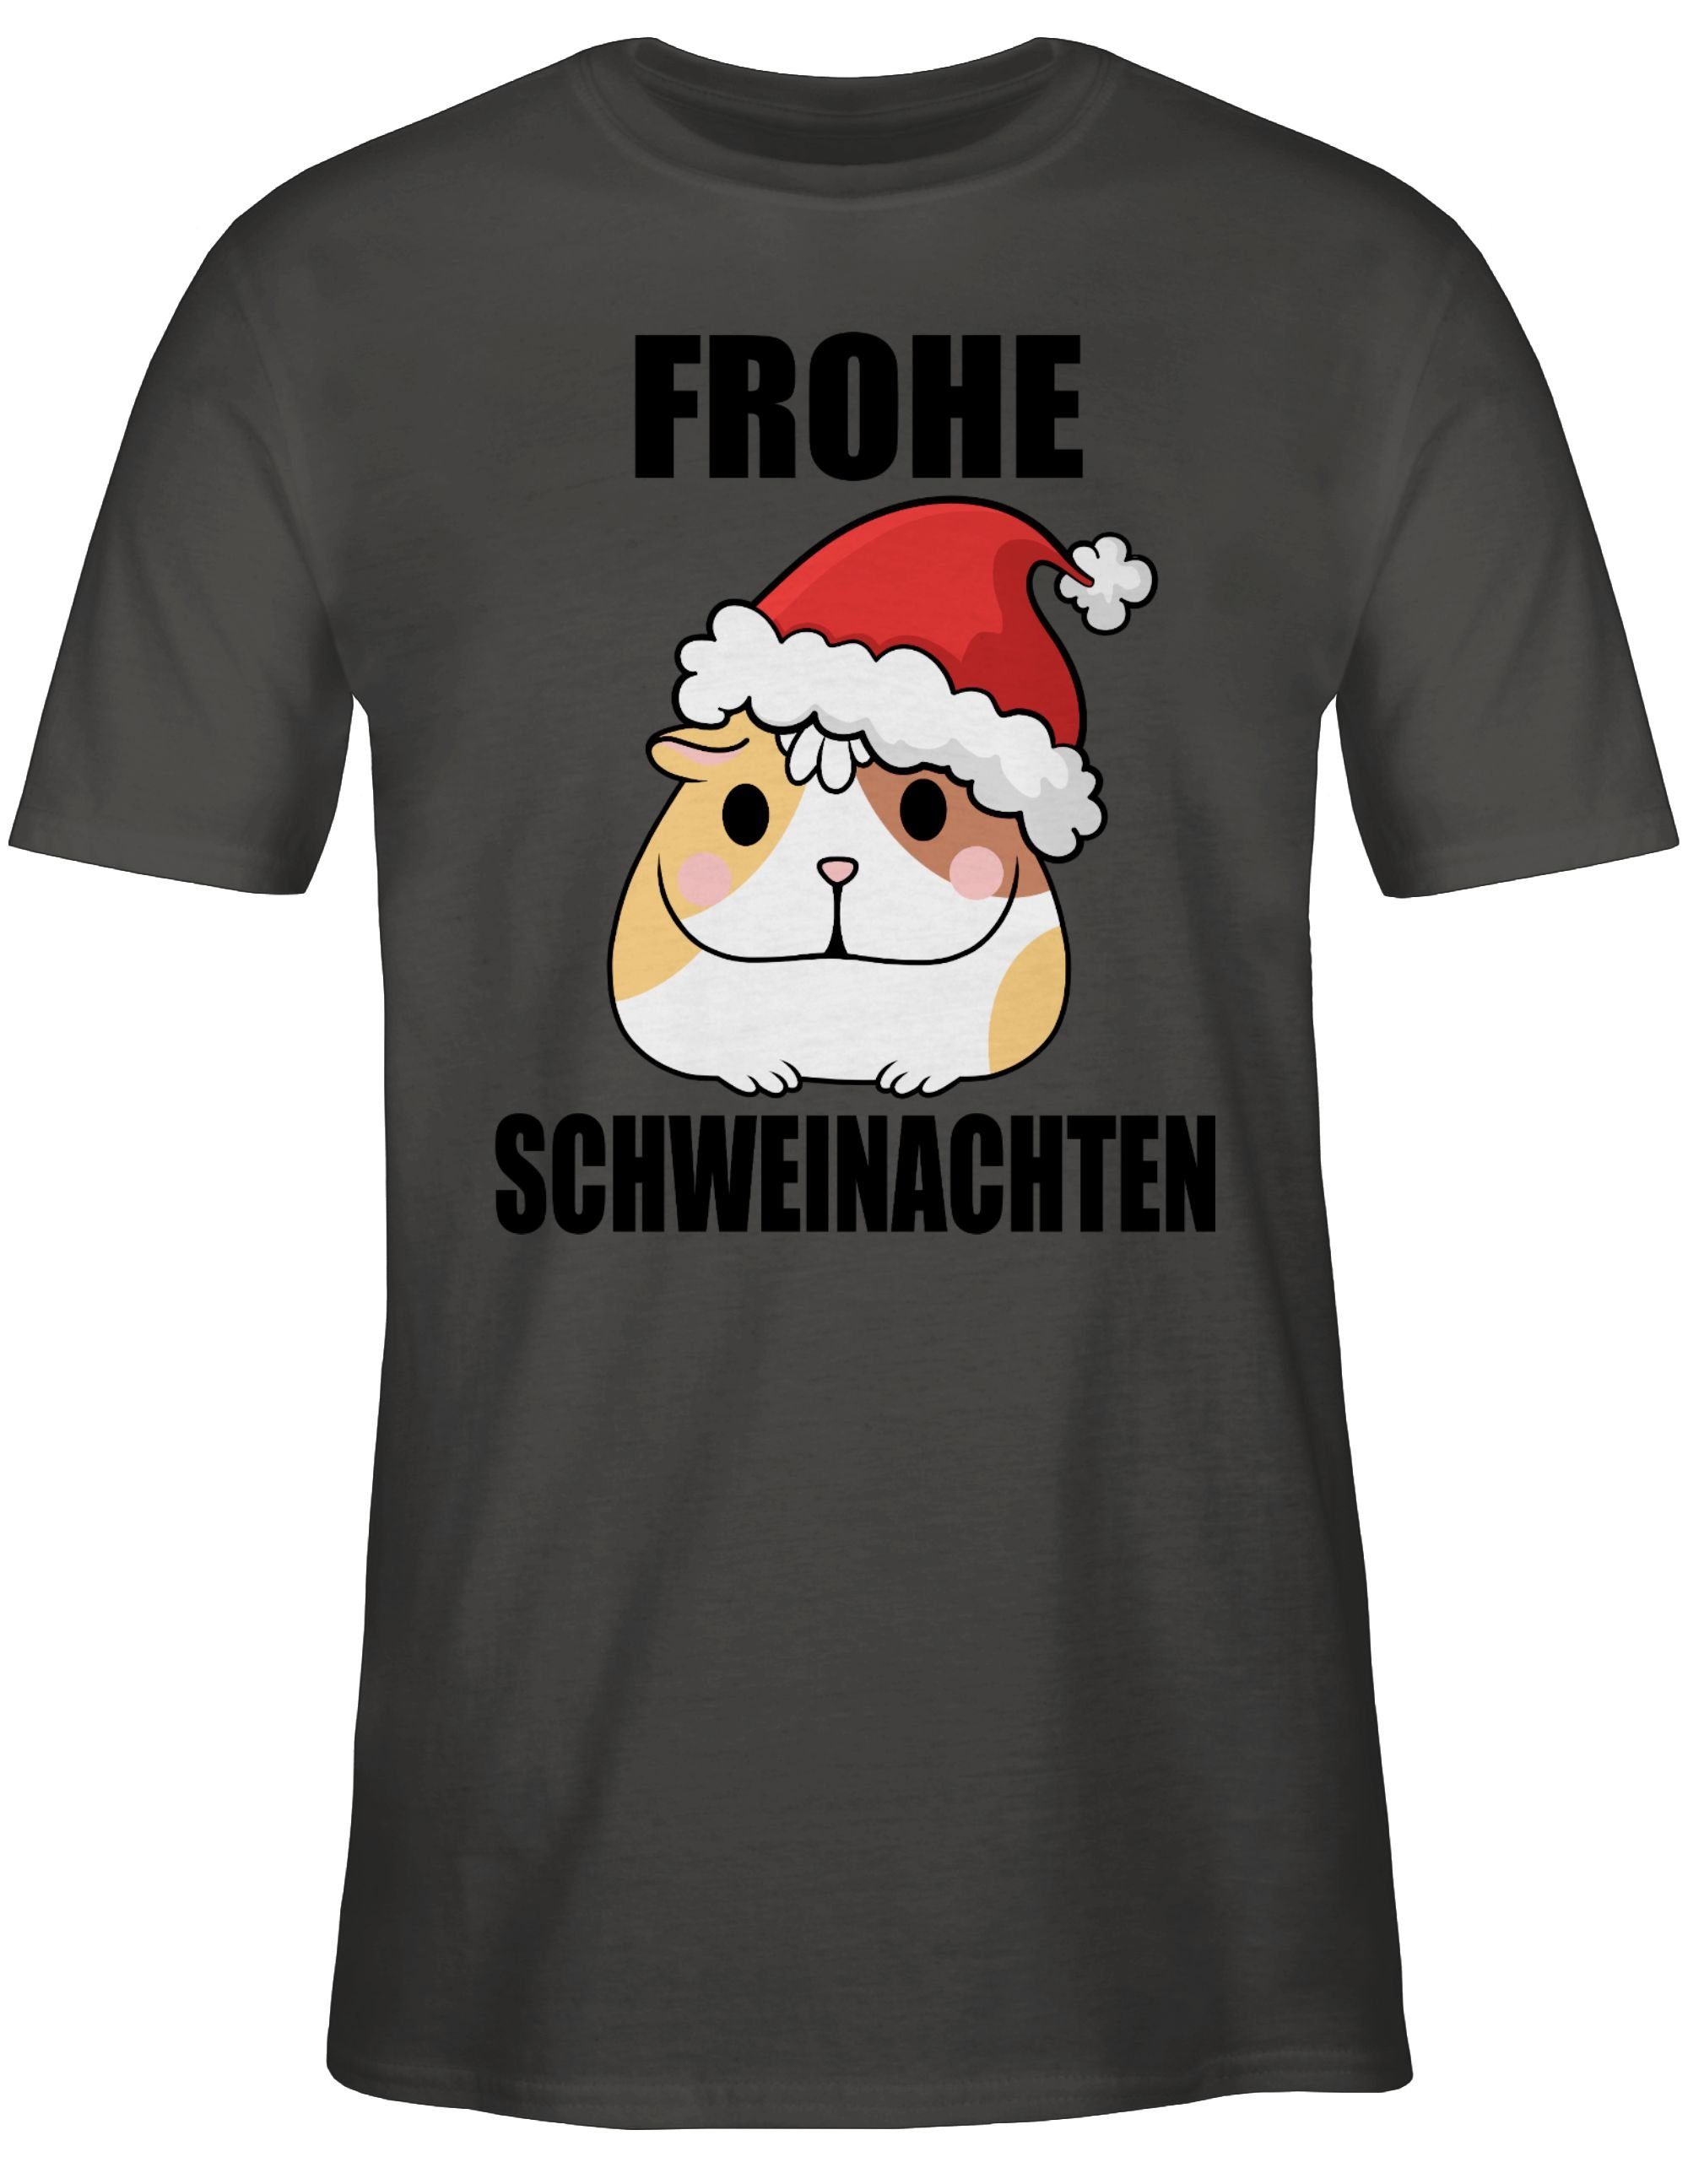 T-Shirt mit Shirtracer Frohe 3 Dunkelgrau Schweinachten Meerschweinchen Kleidung Weihachten